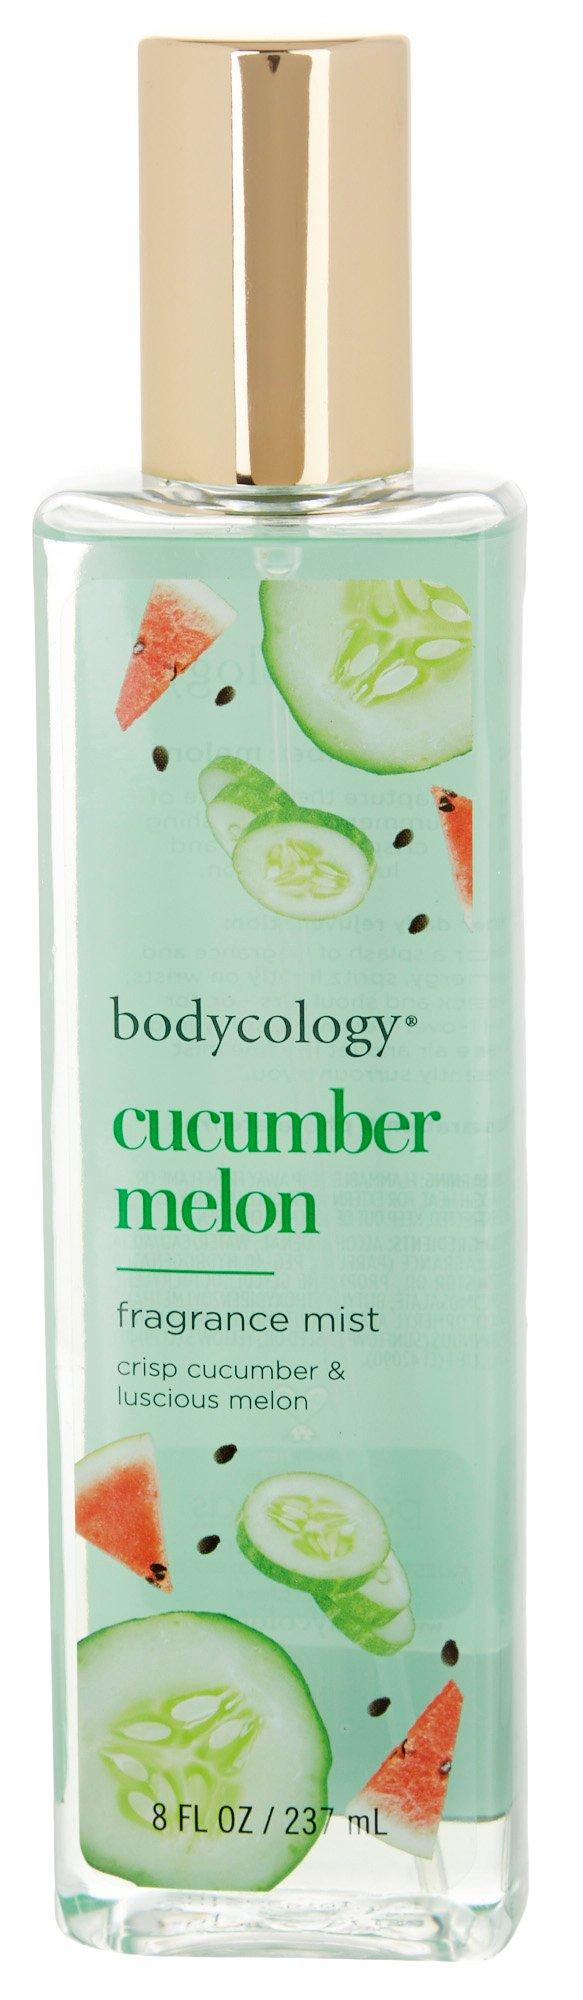 Bodycology Cucumber Melon Fragrance Mist 8 oz.